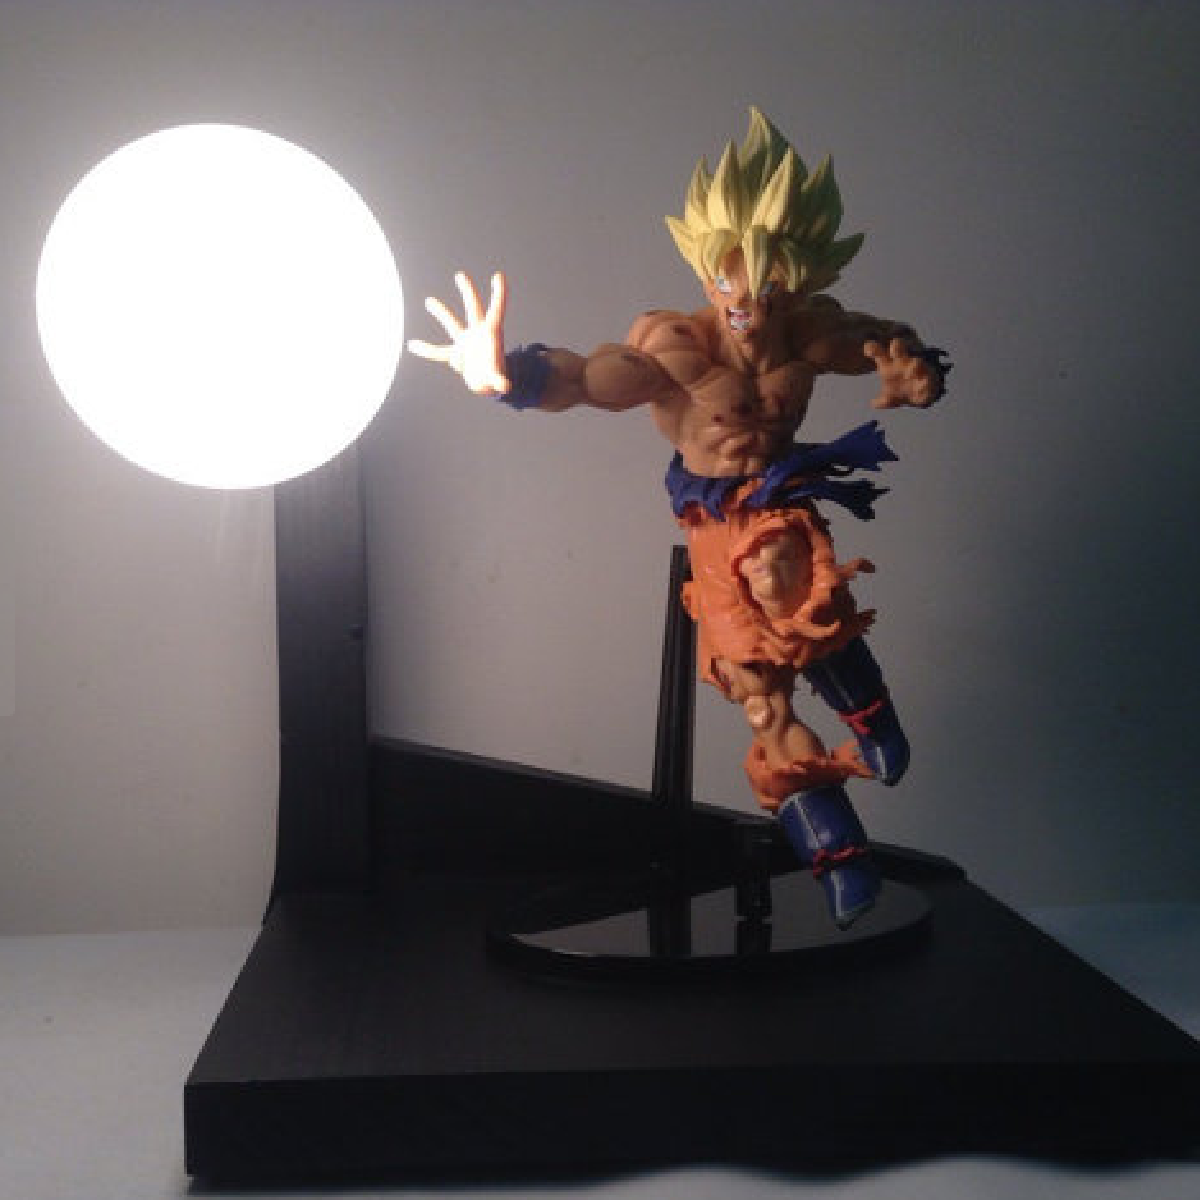 Cadeaux 2 Ouf : idées de cadeaux insolites et originaux !: La lampe Dragon Ball Z, indispensable ...